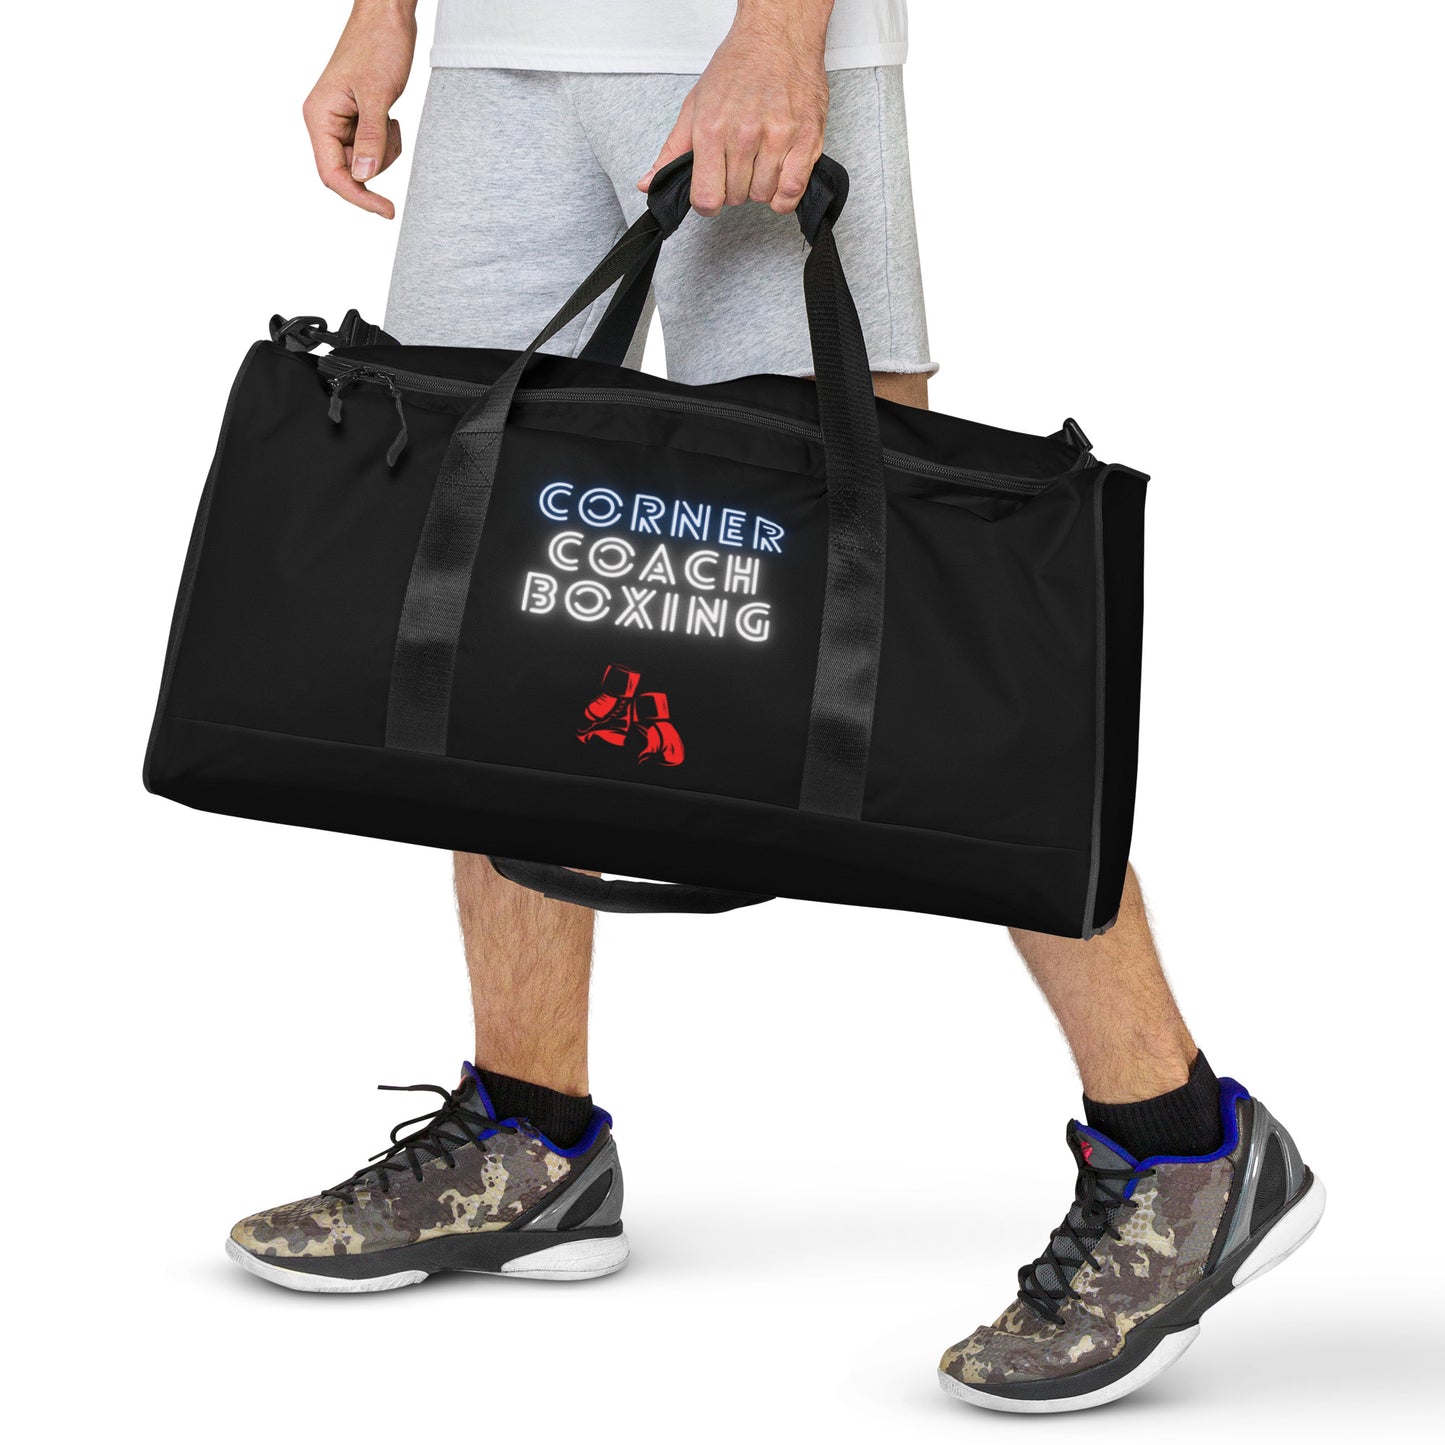 Corner Coach Boxing Duffle Bag – Cornercoachboxing